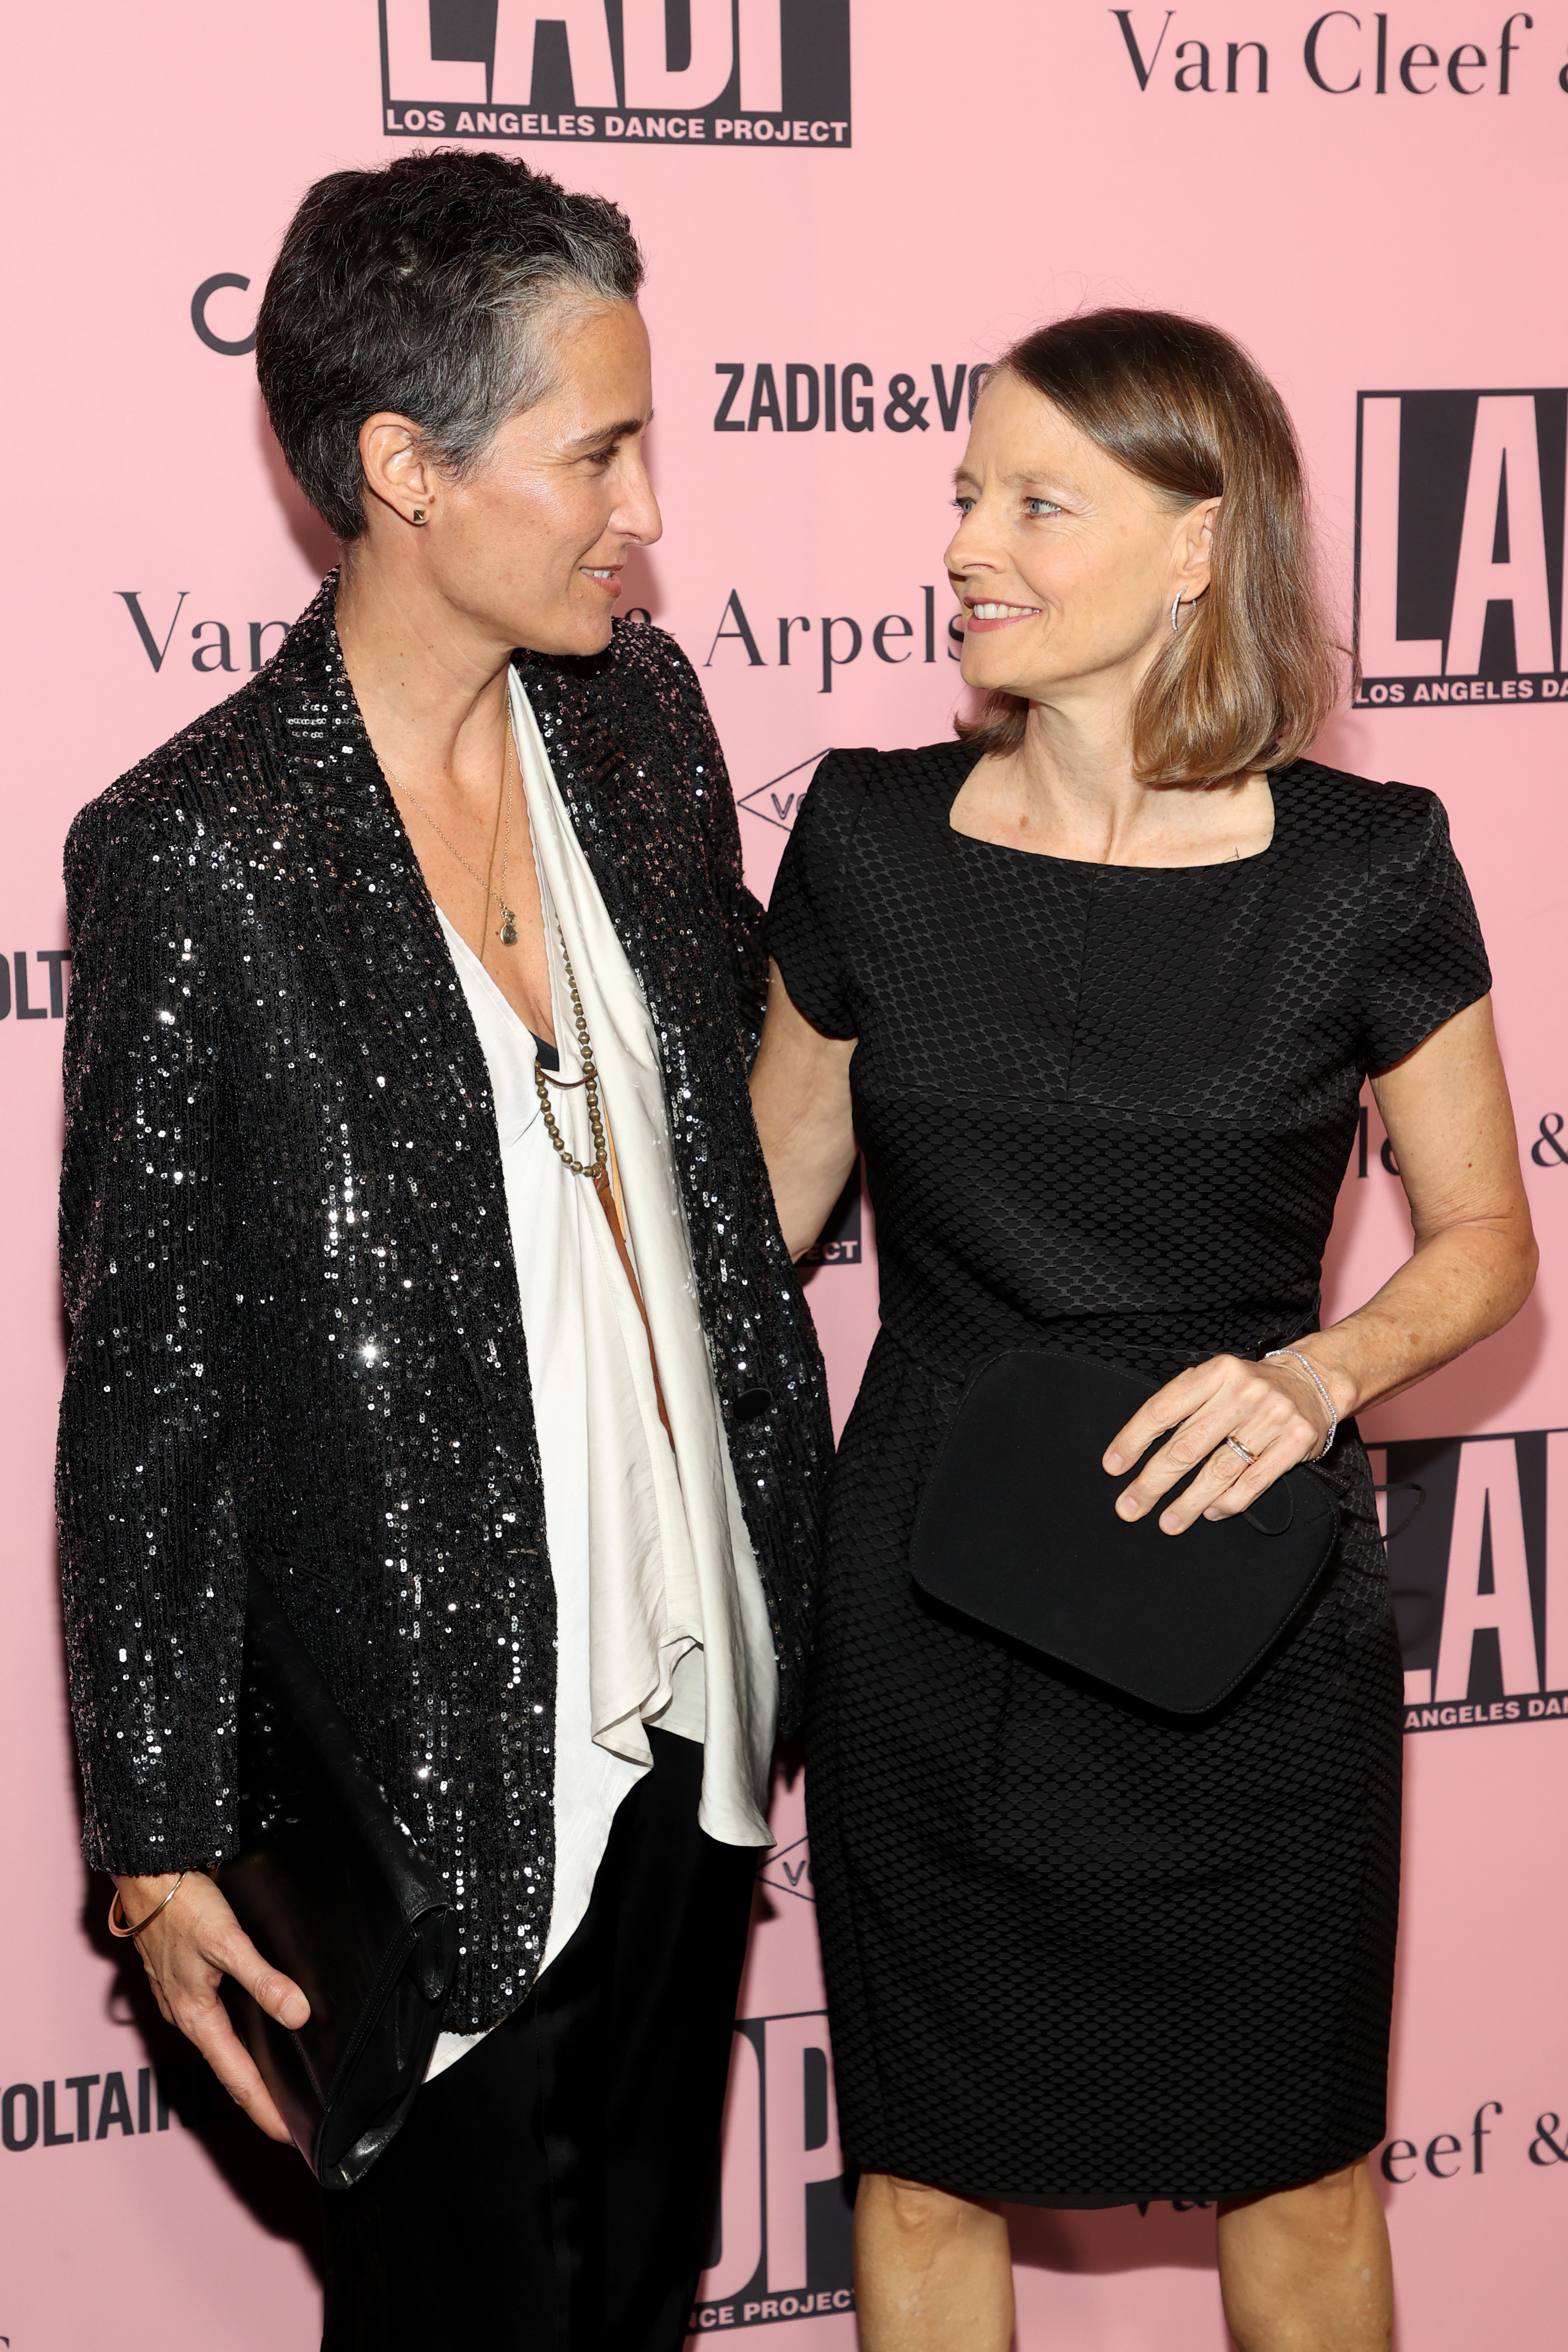 Alexandra Hedison and Jodie Foster en la Gala Anual del Proyecto de Danza de Los Ángeles en Los Ángeles, California, el 16 de octubre de 2021 | Foto: Getty Images